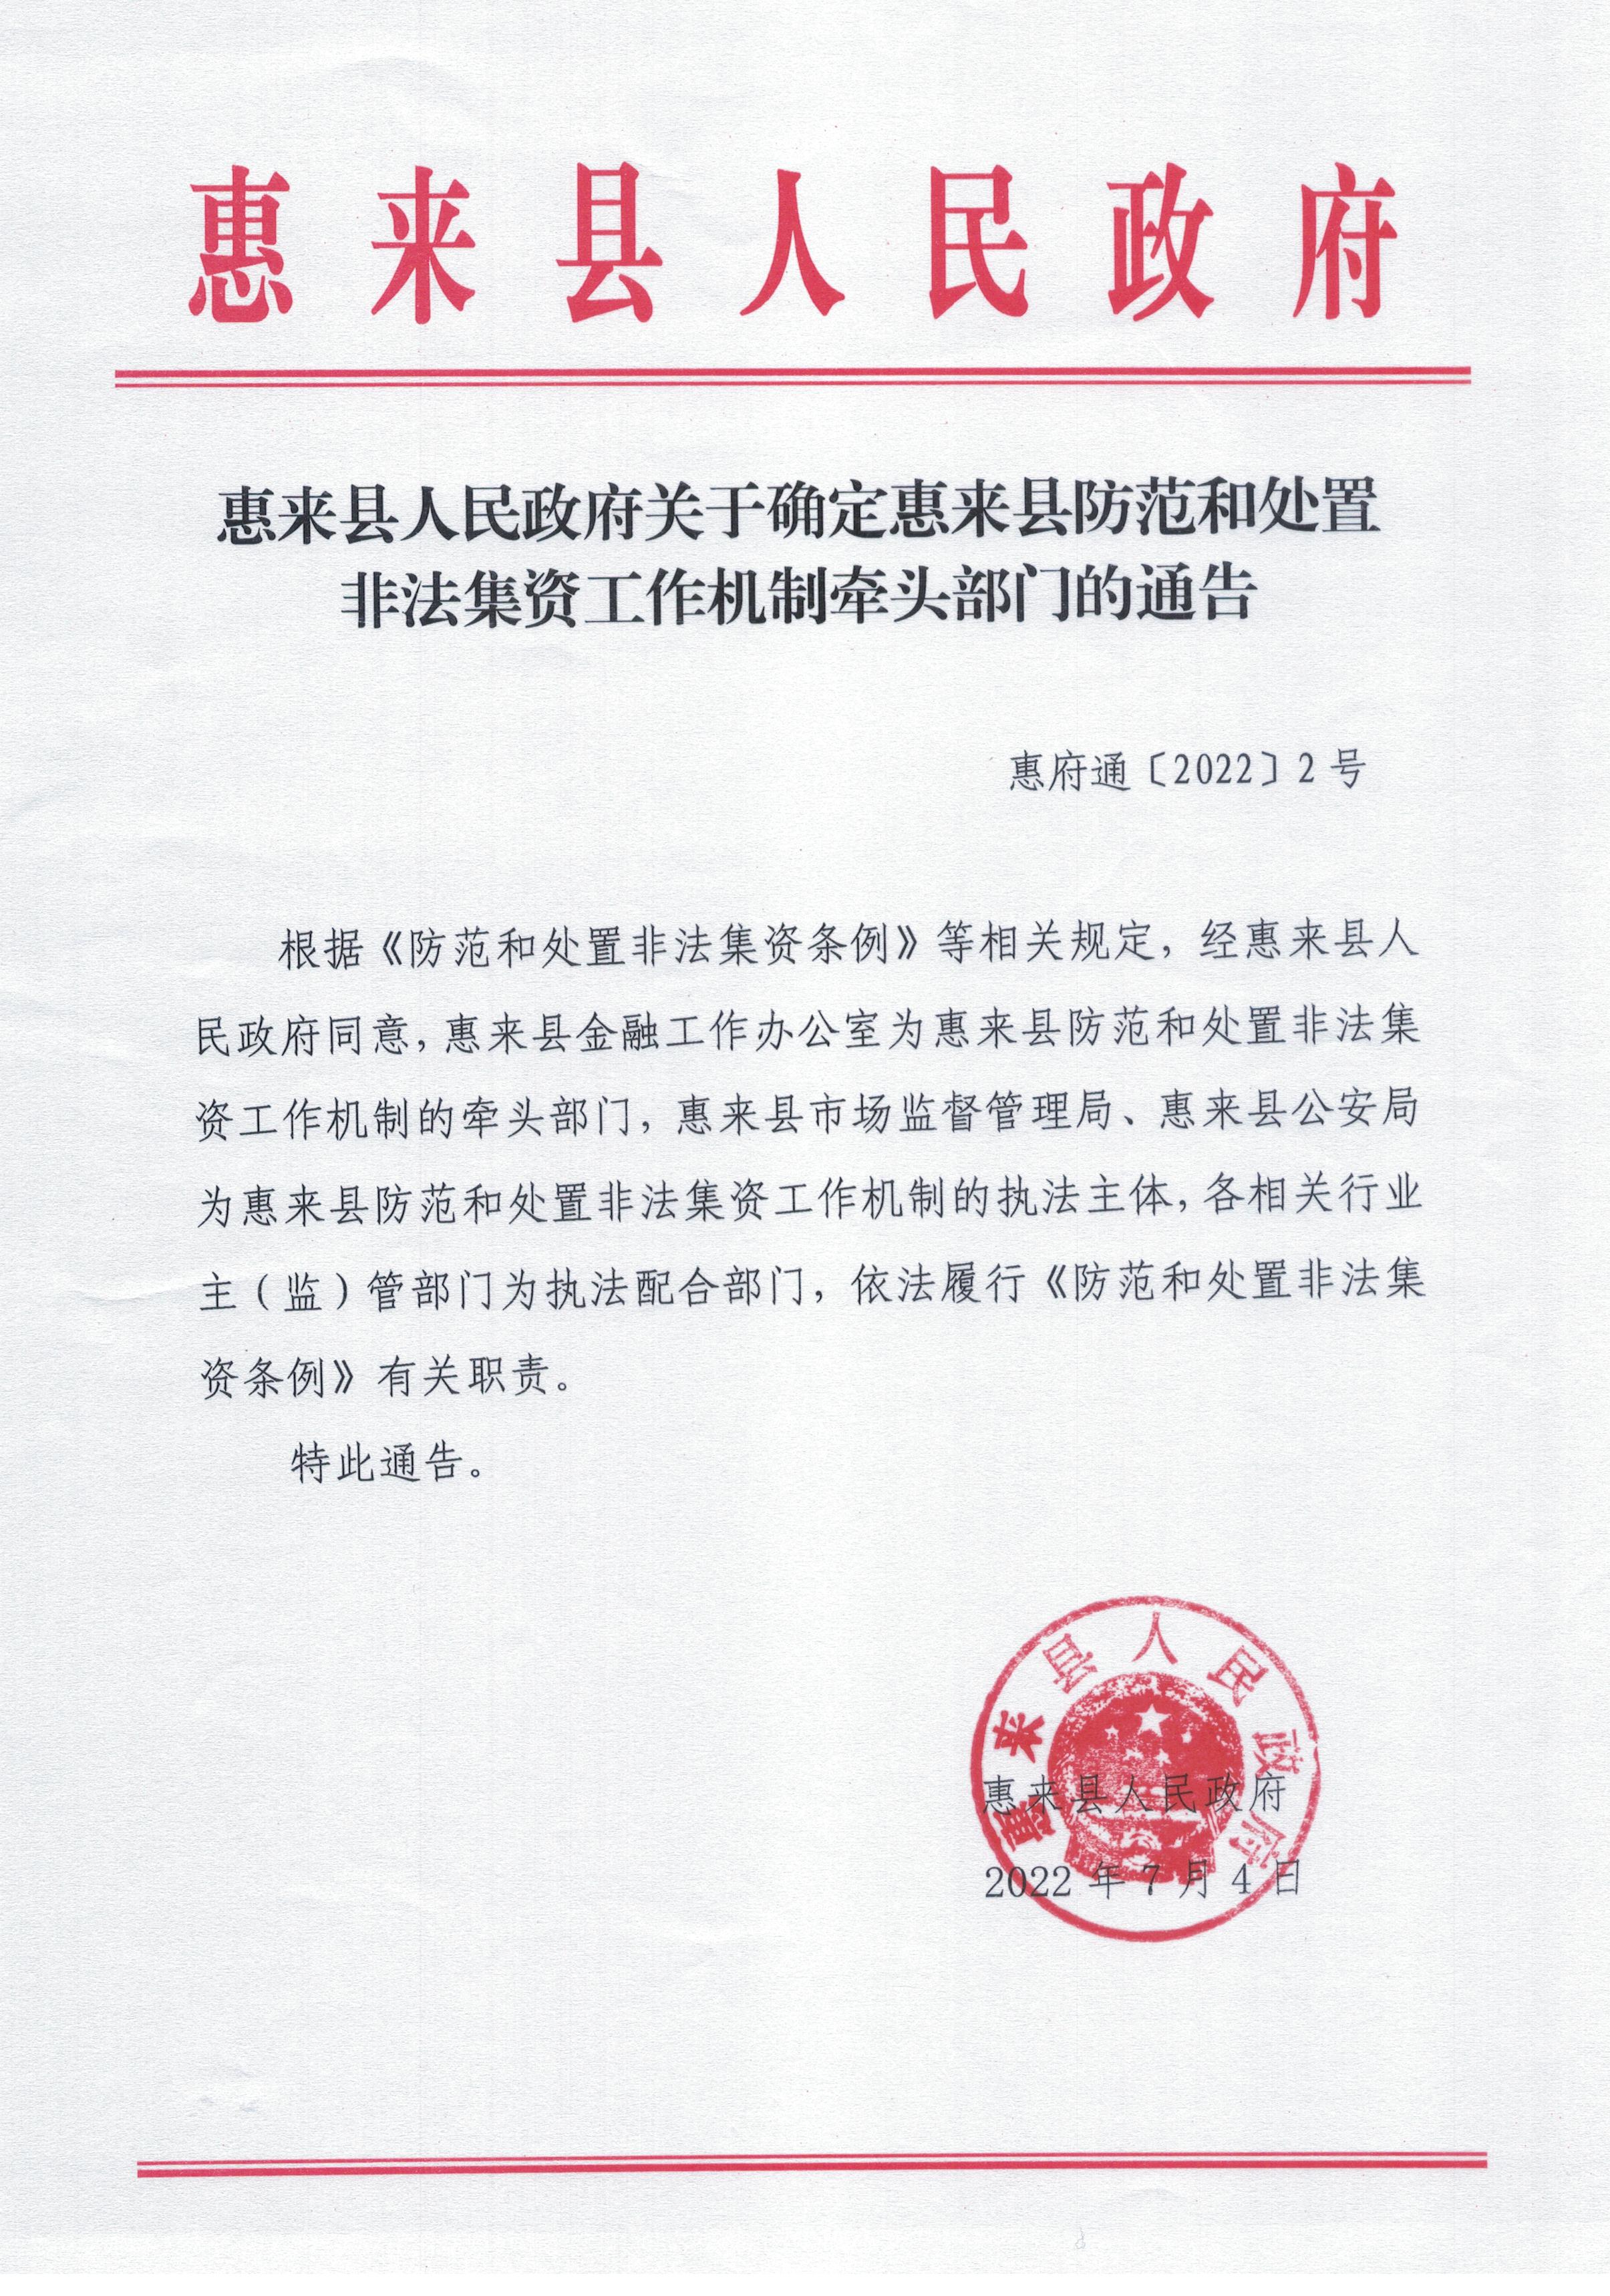 惠来县人民政府关于确定惠来县防范和处置非法集资工作机制牵头部门的通告.jpg